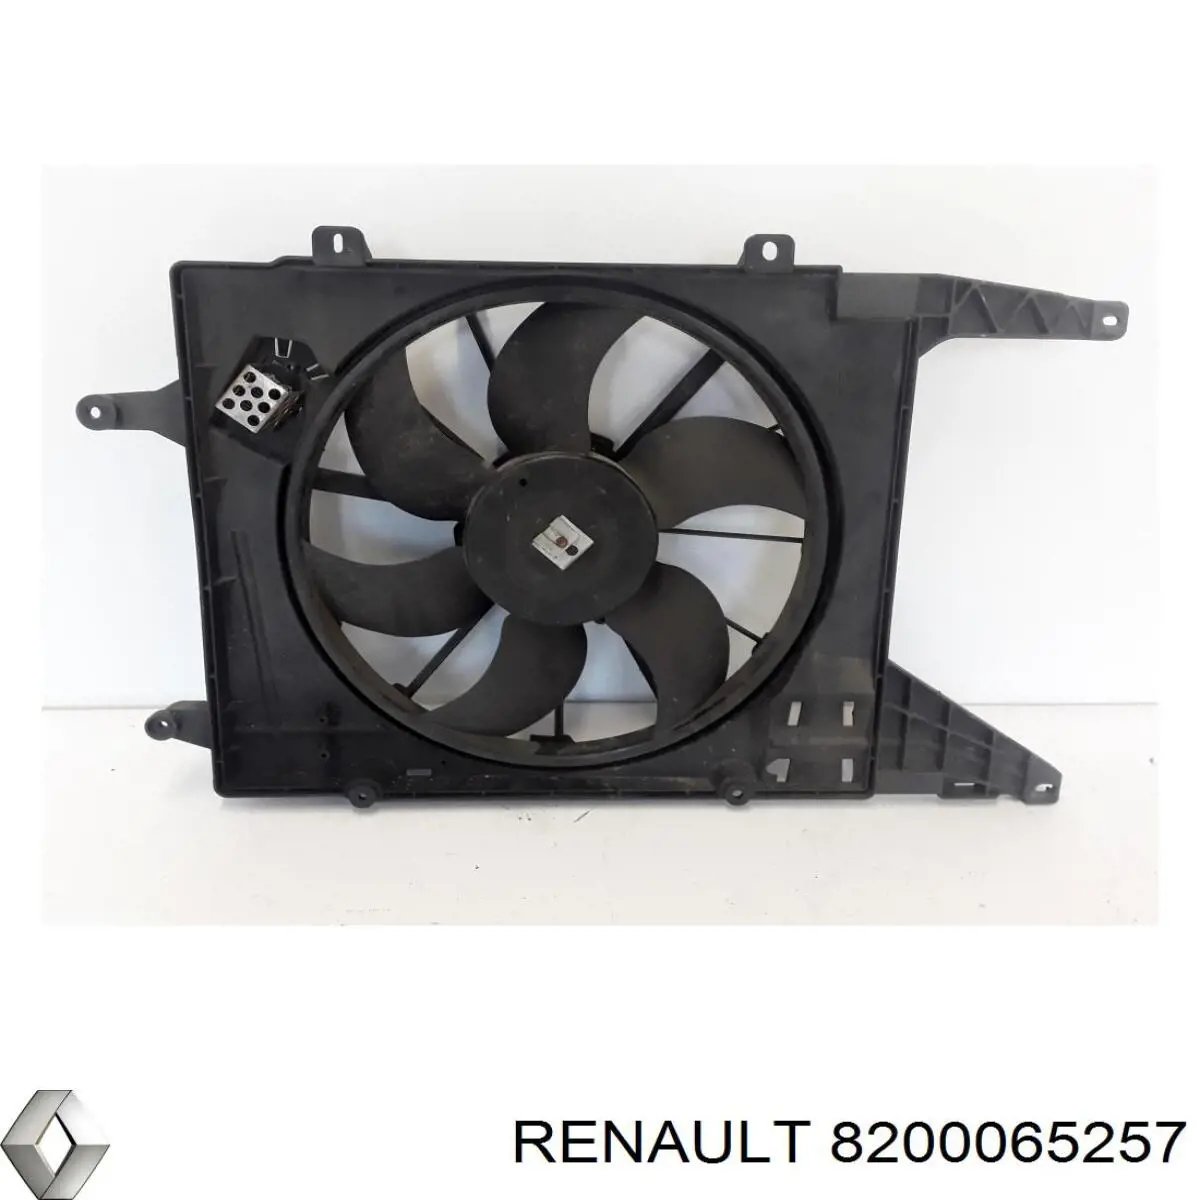 Difusor de radiador, ventilador de refrigeración, condensador del aire acondicionado, completo con motor y rodete para Renault Megane (LA0)